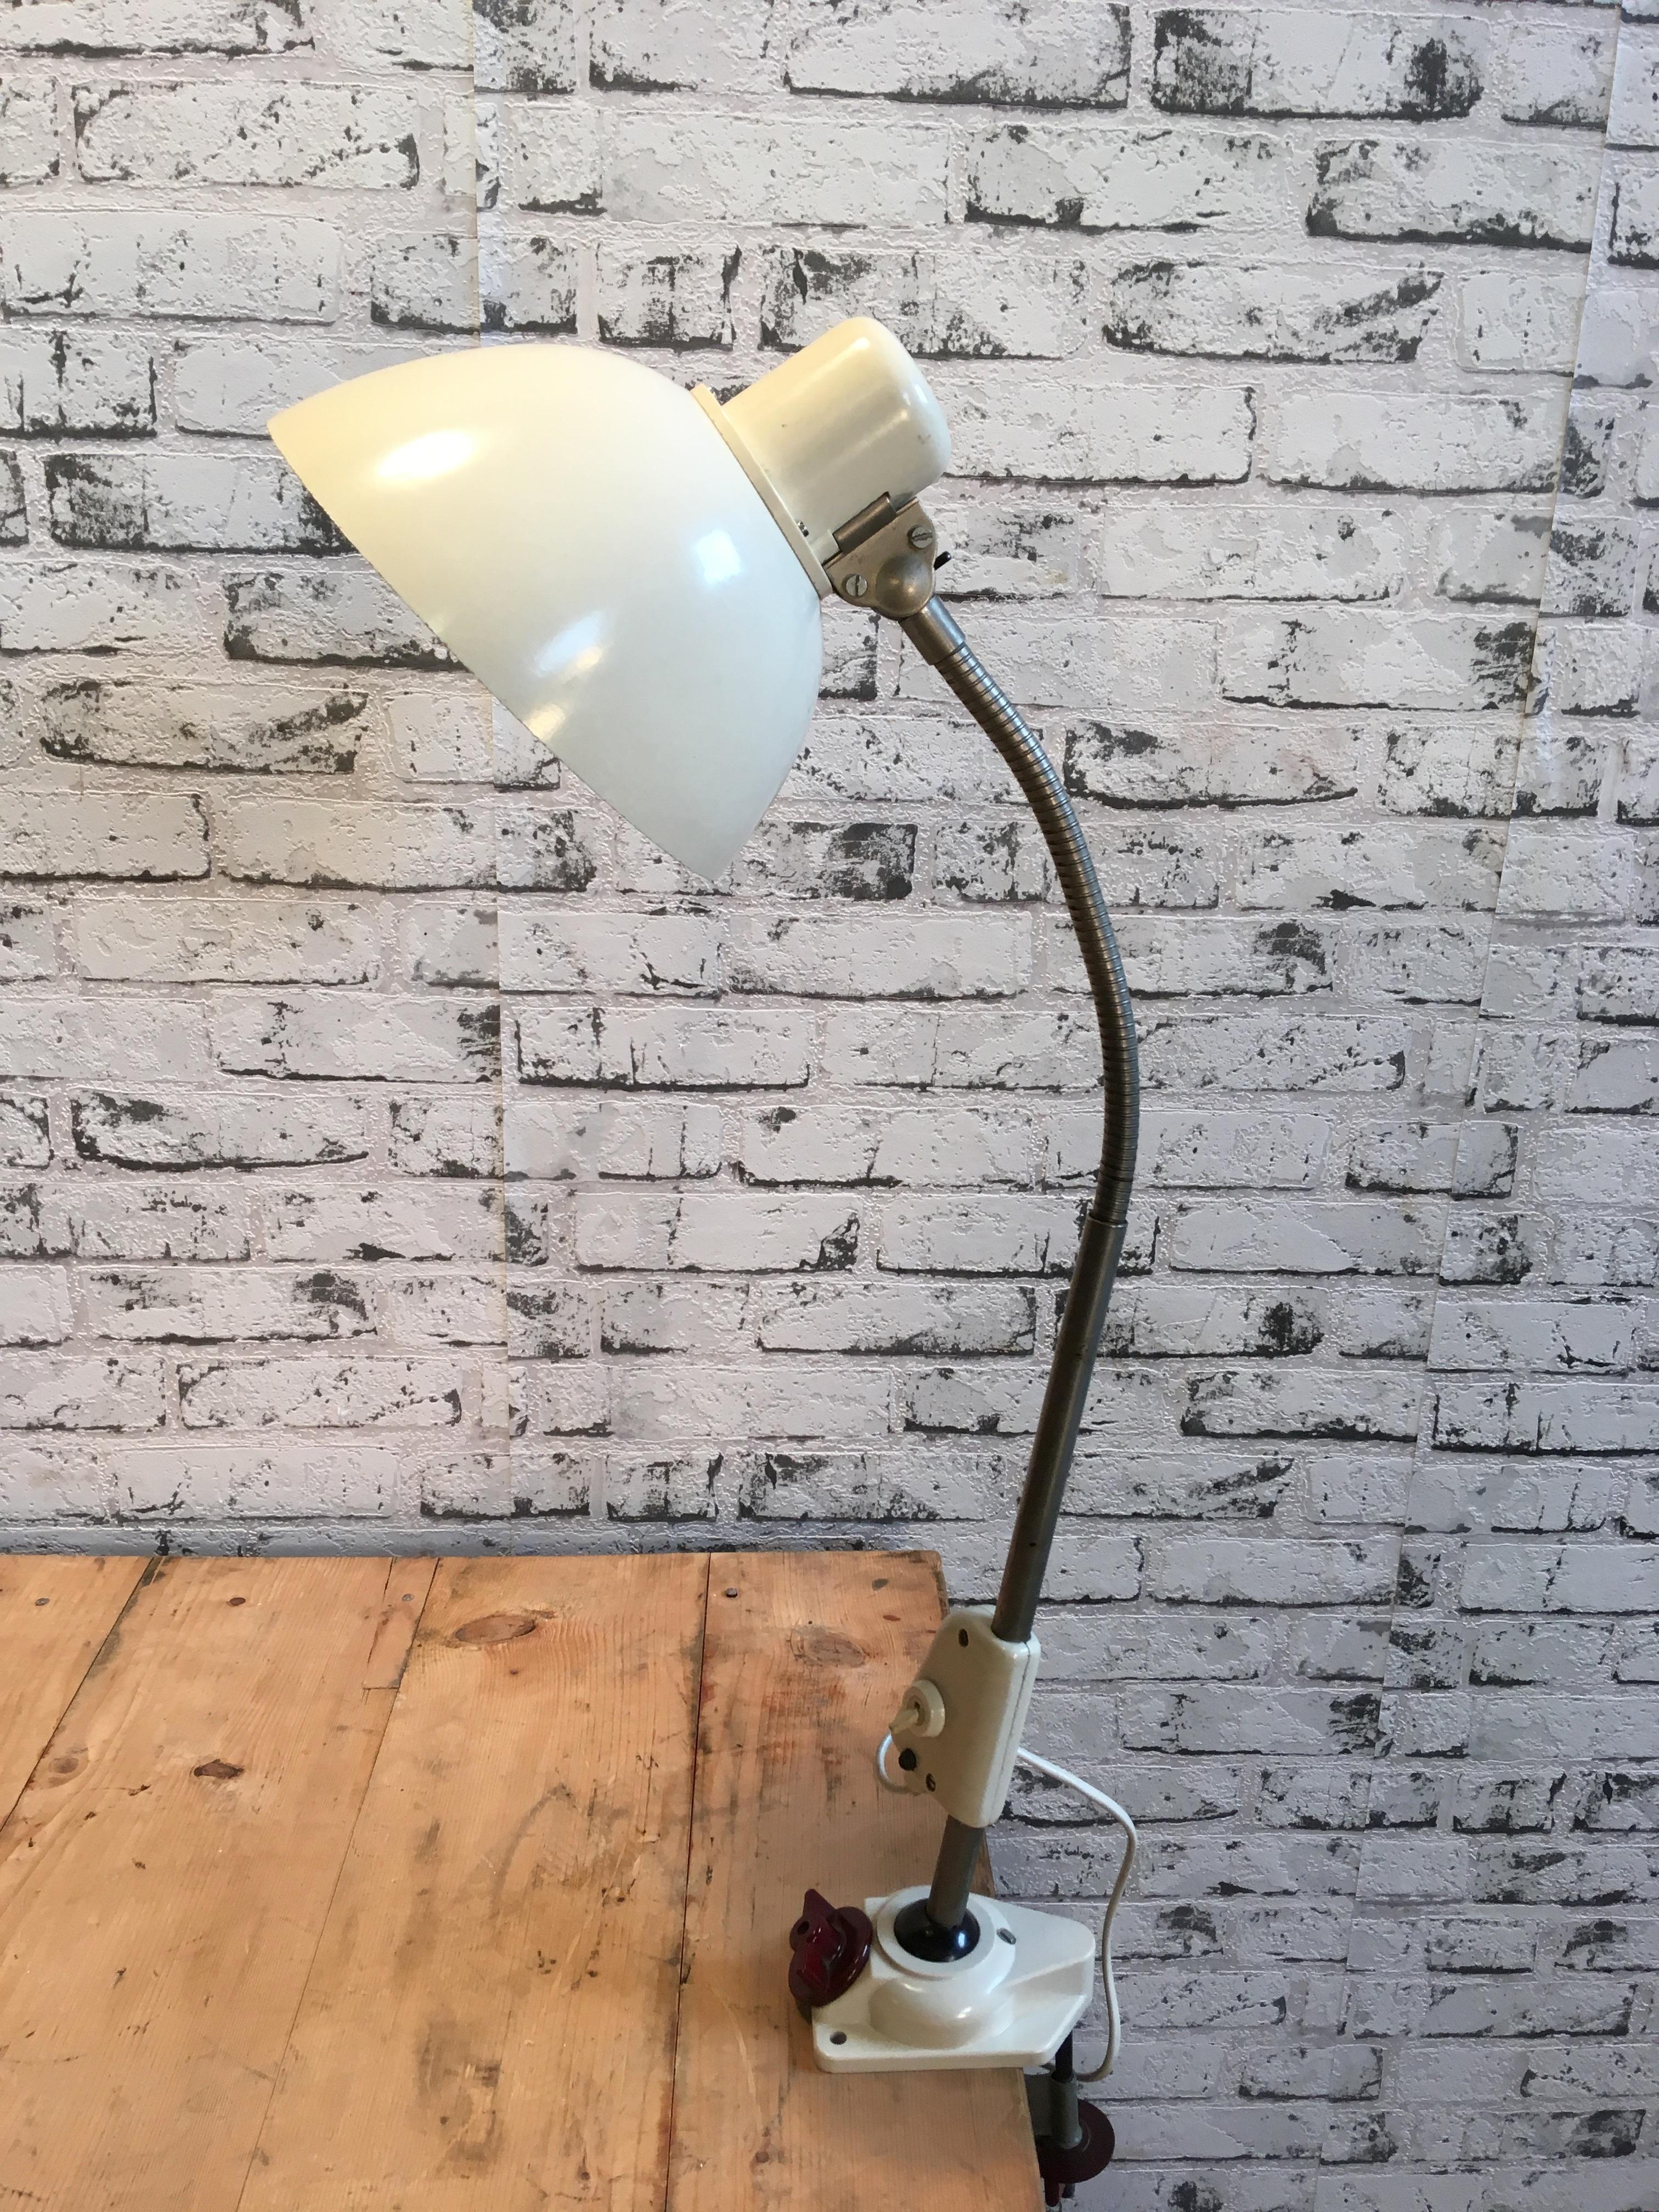 Old German bakelite flexible industrial table lamp. Made by Reif Dresden, 1950s.